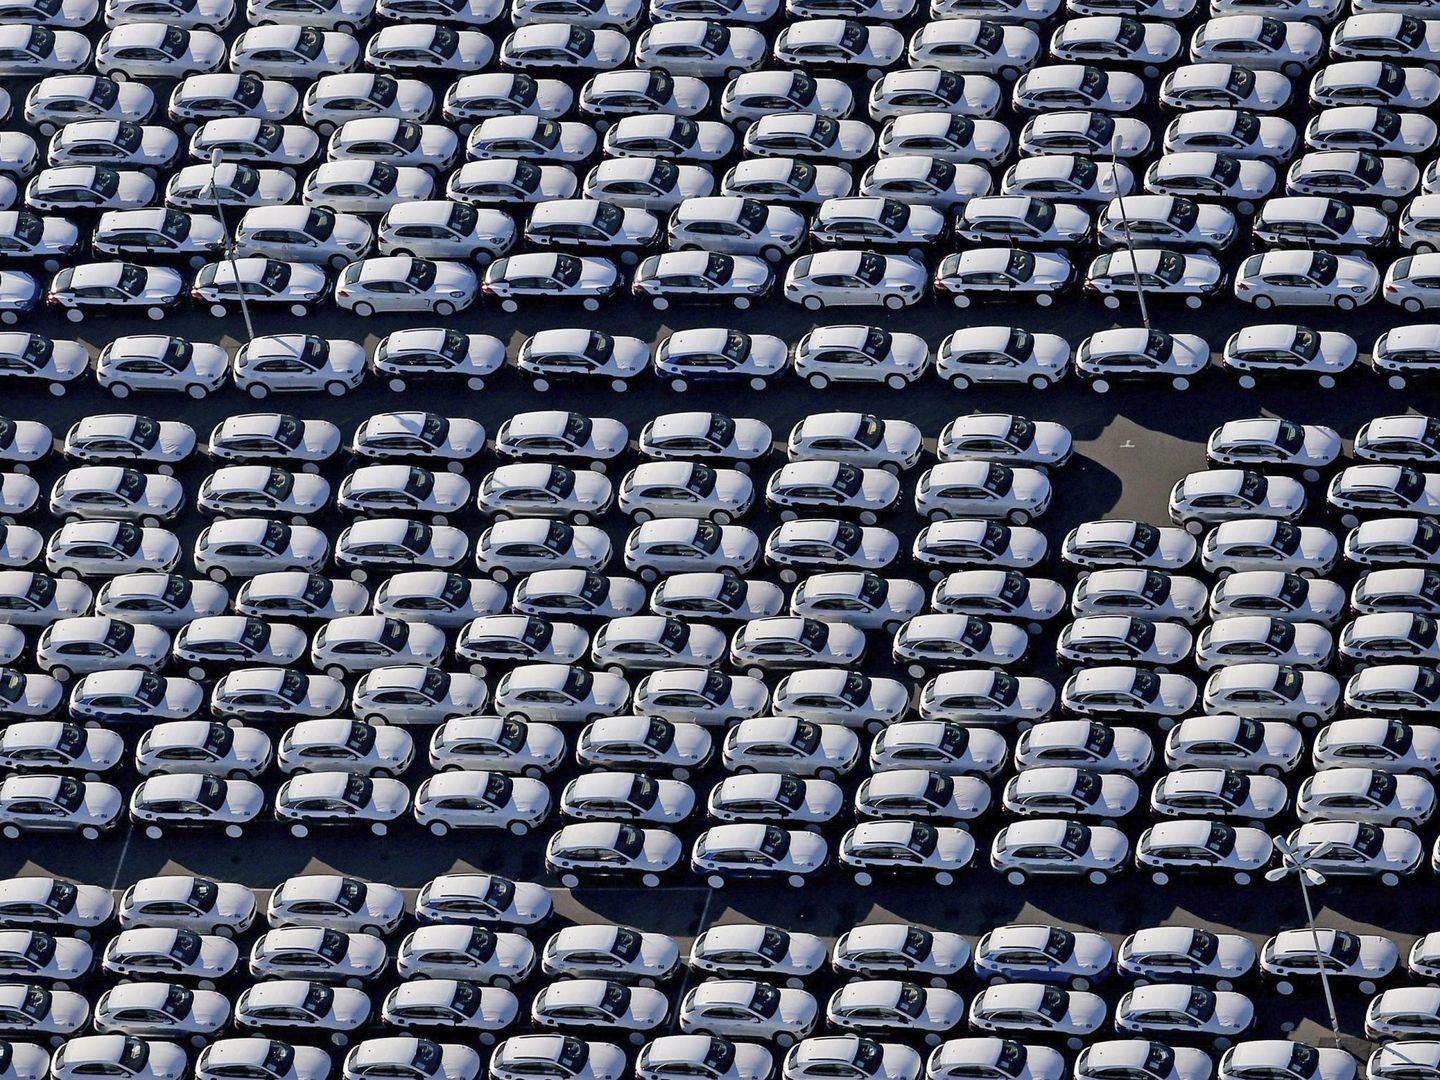 Vista aérea del estacionamiento de automóviles. (EFE)